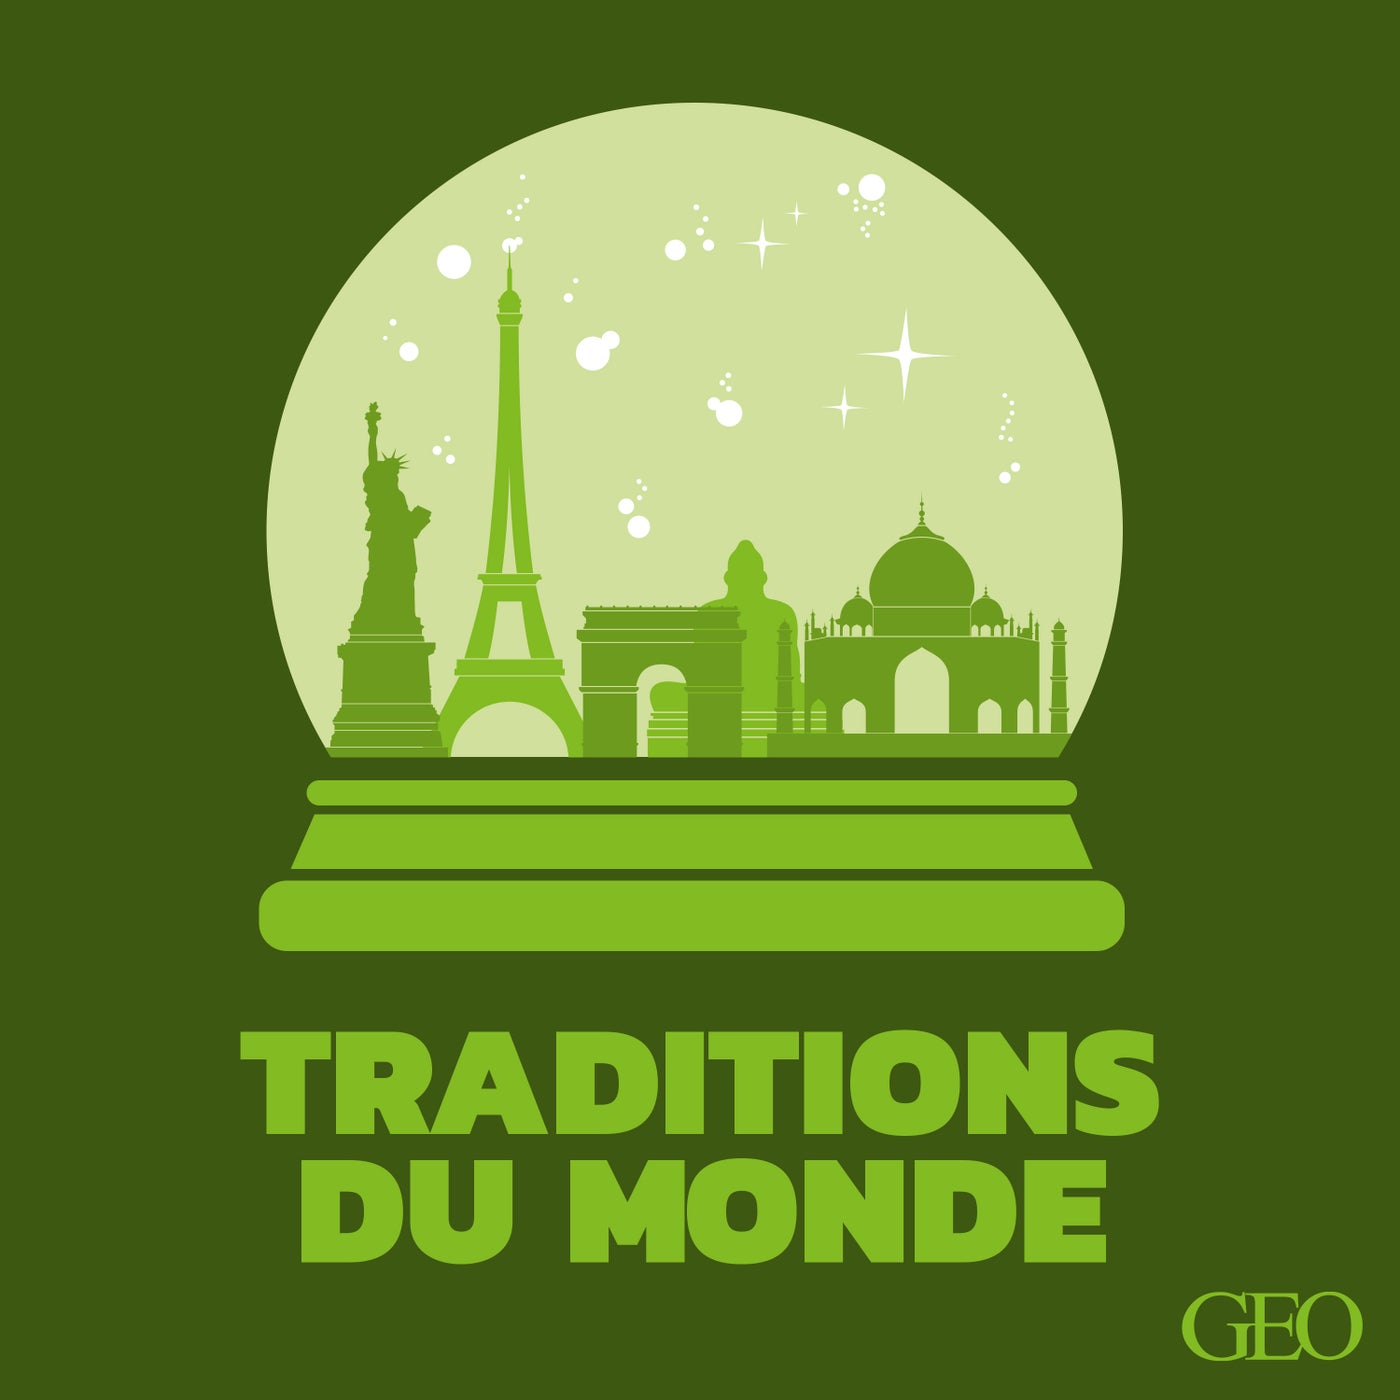 Traditions du monde, par GEO